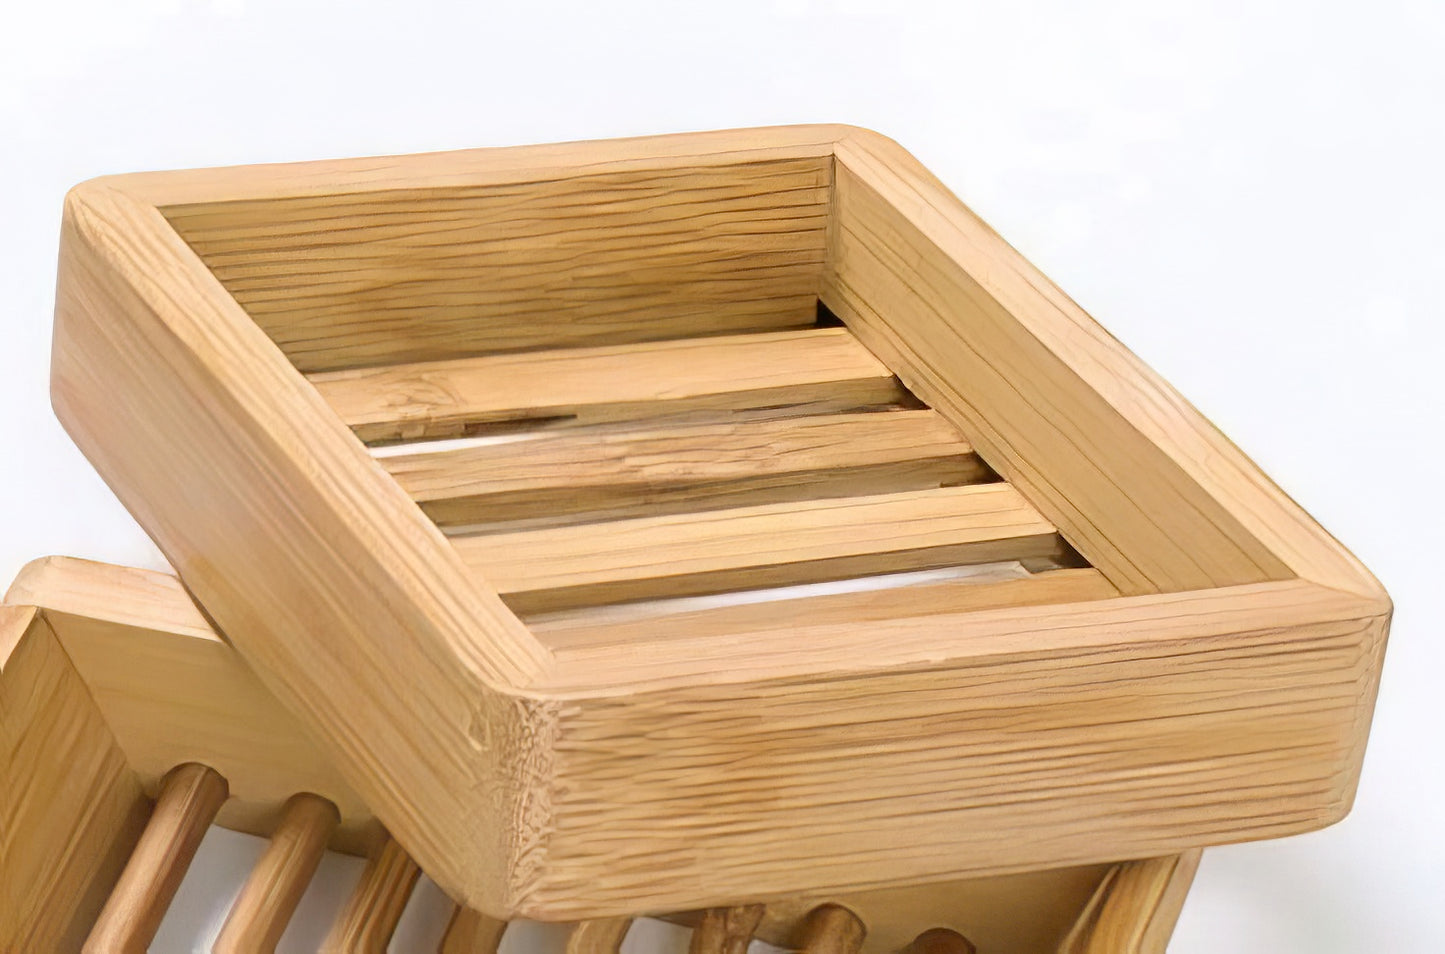 Handmade Square Shape Bamboo Wooden Soap Holder